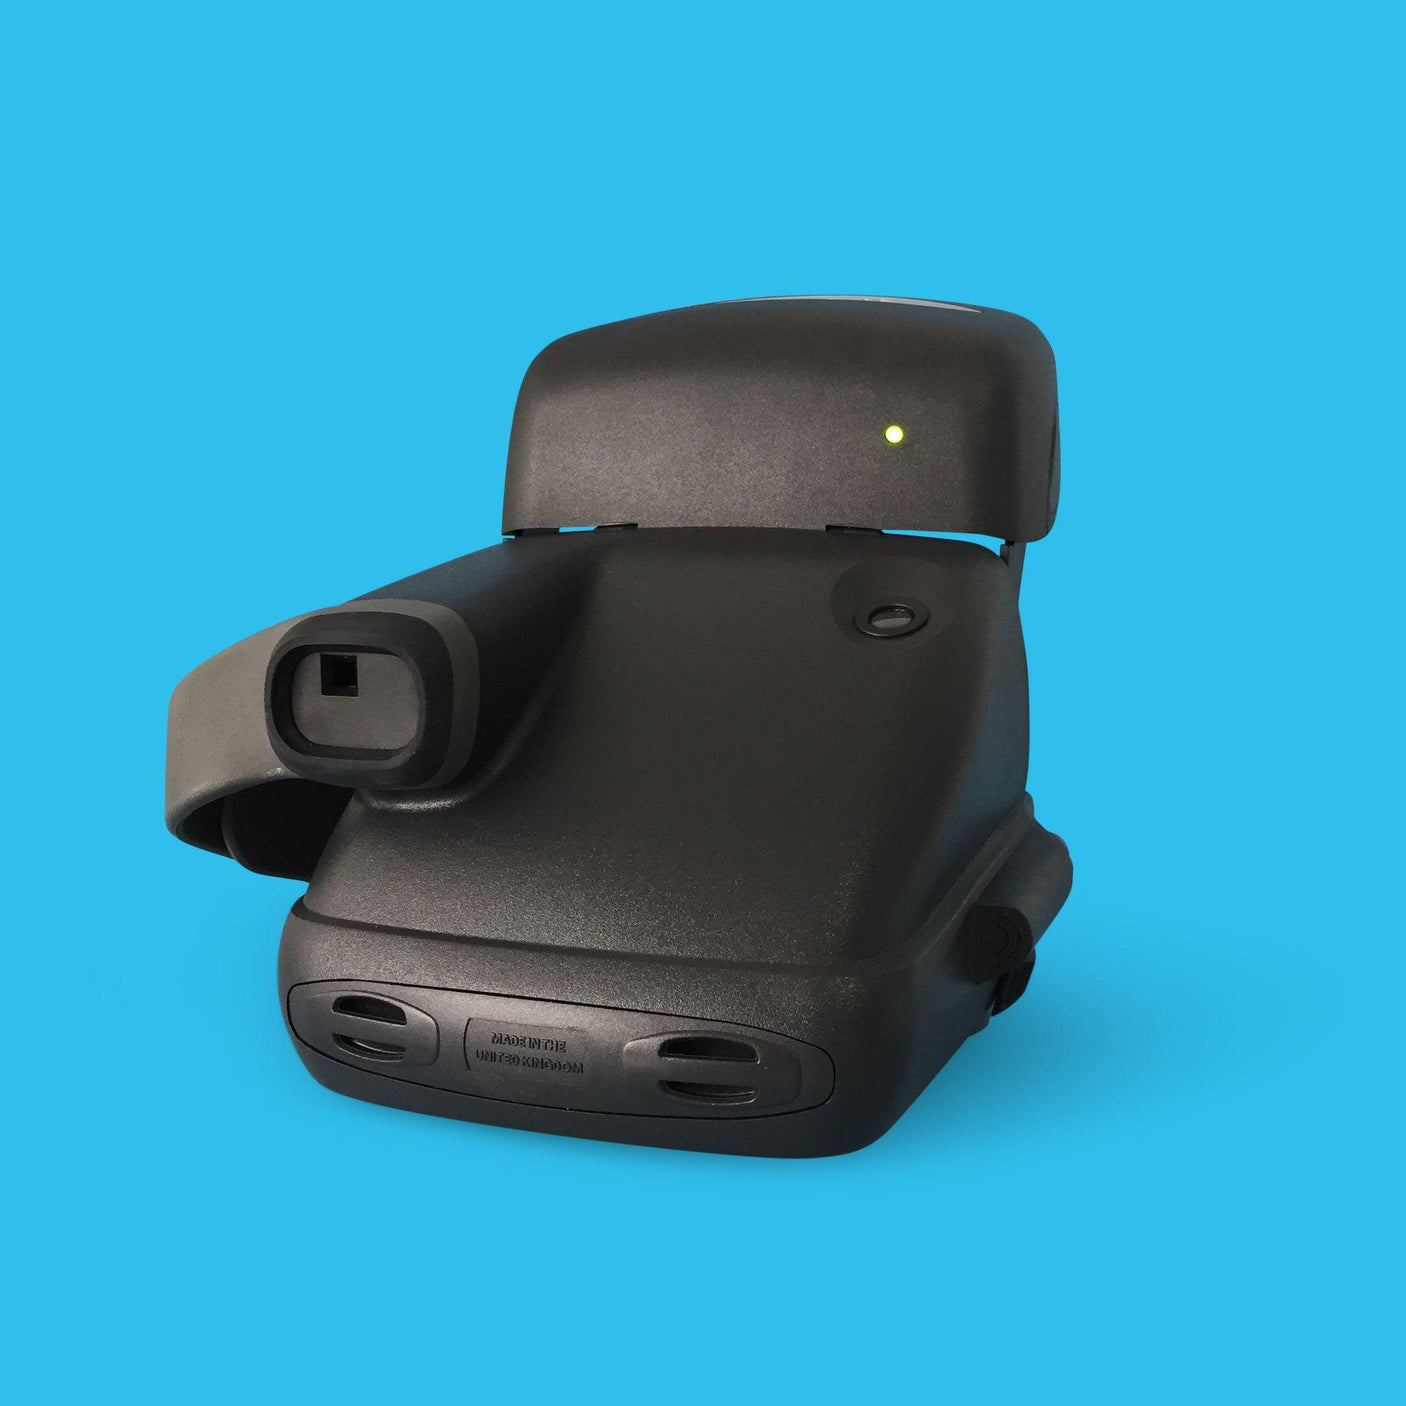 Retro Polaroid Cool Cam 600 Instant Film Camera with Original Box